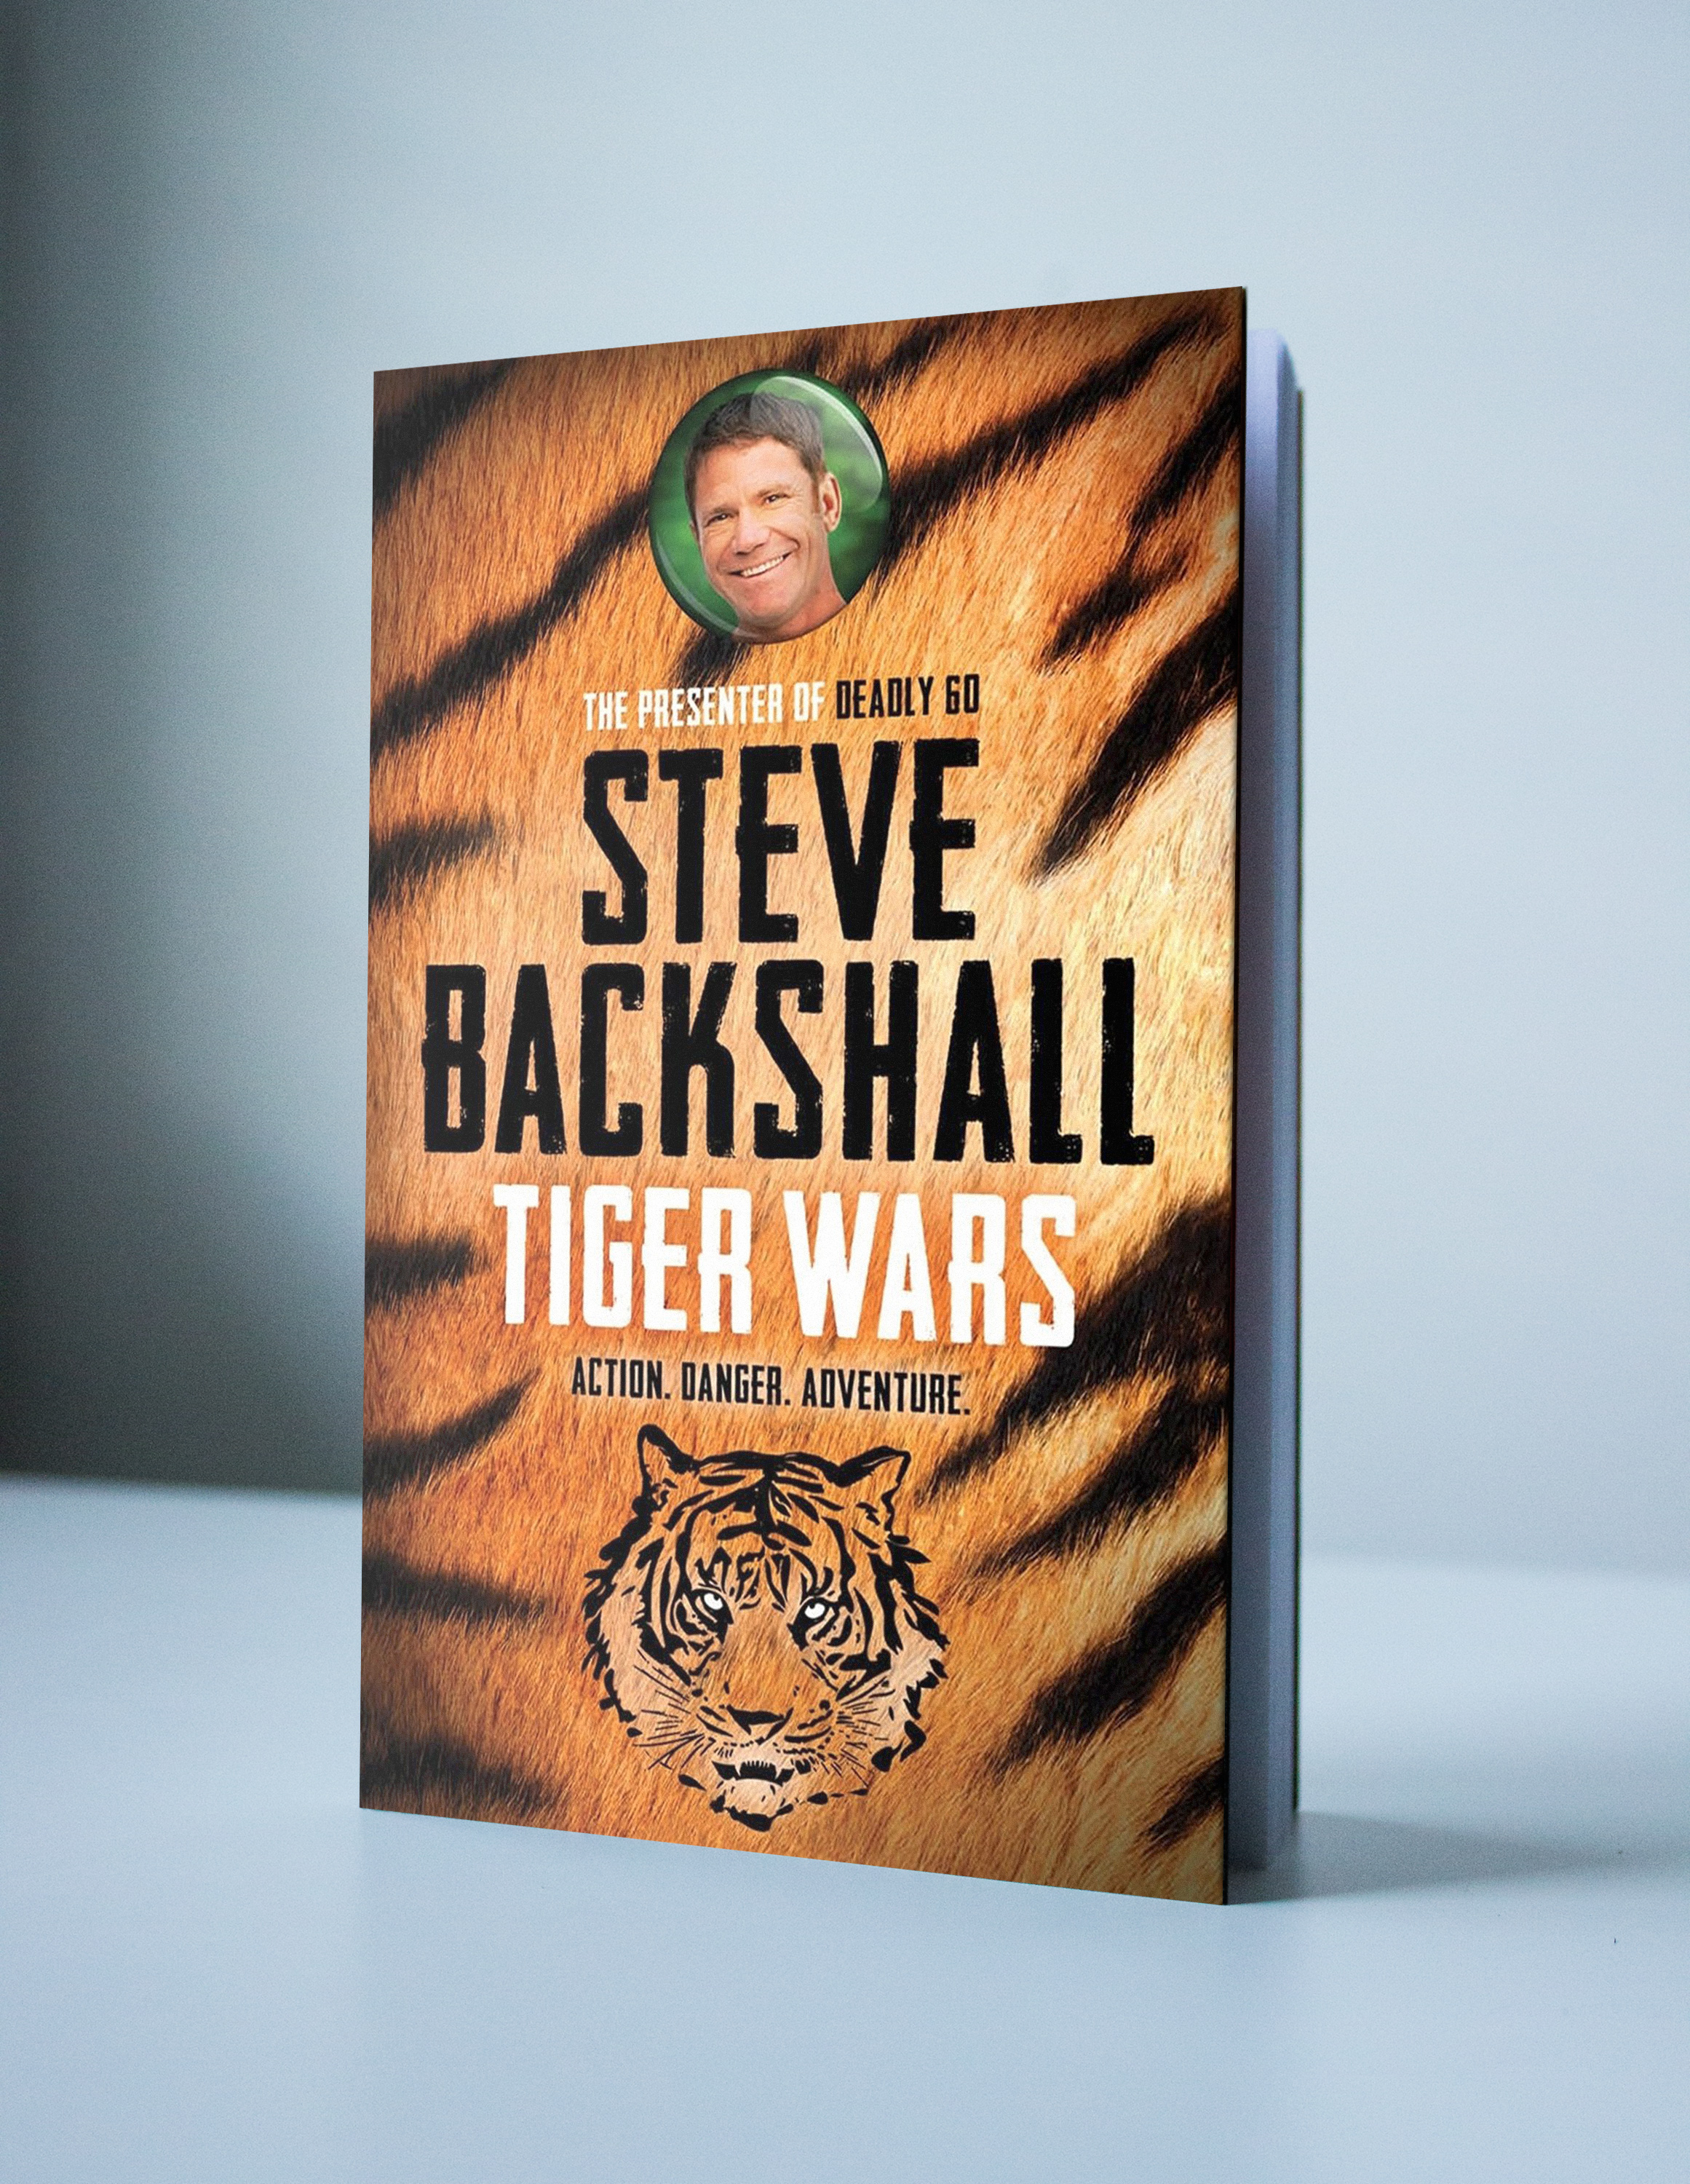 Steve Backshall Tiger Wars